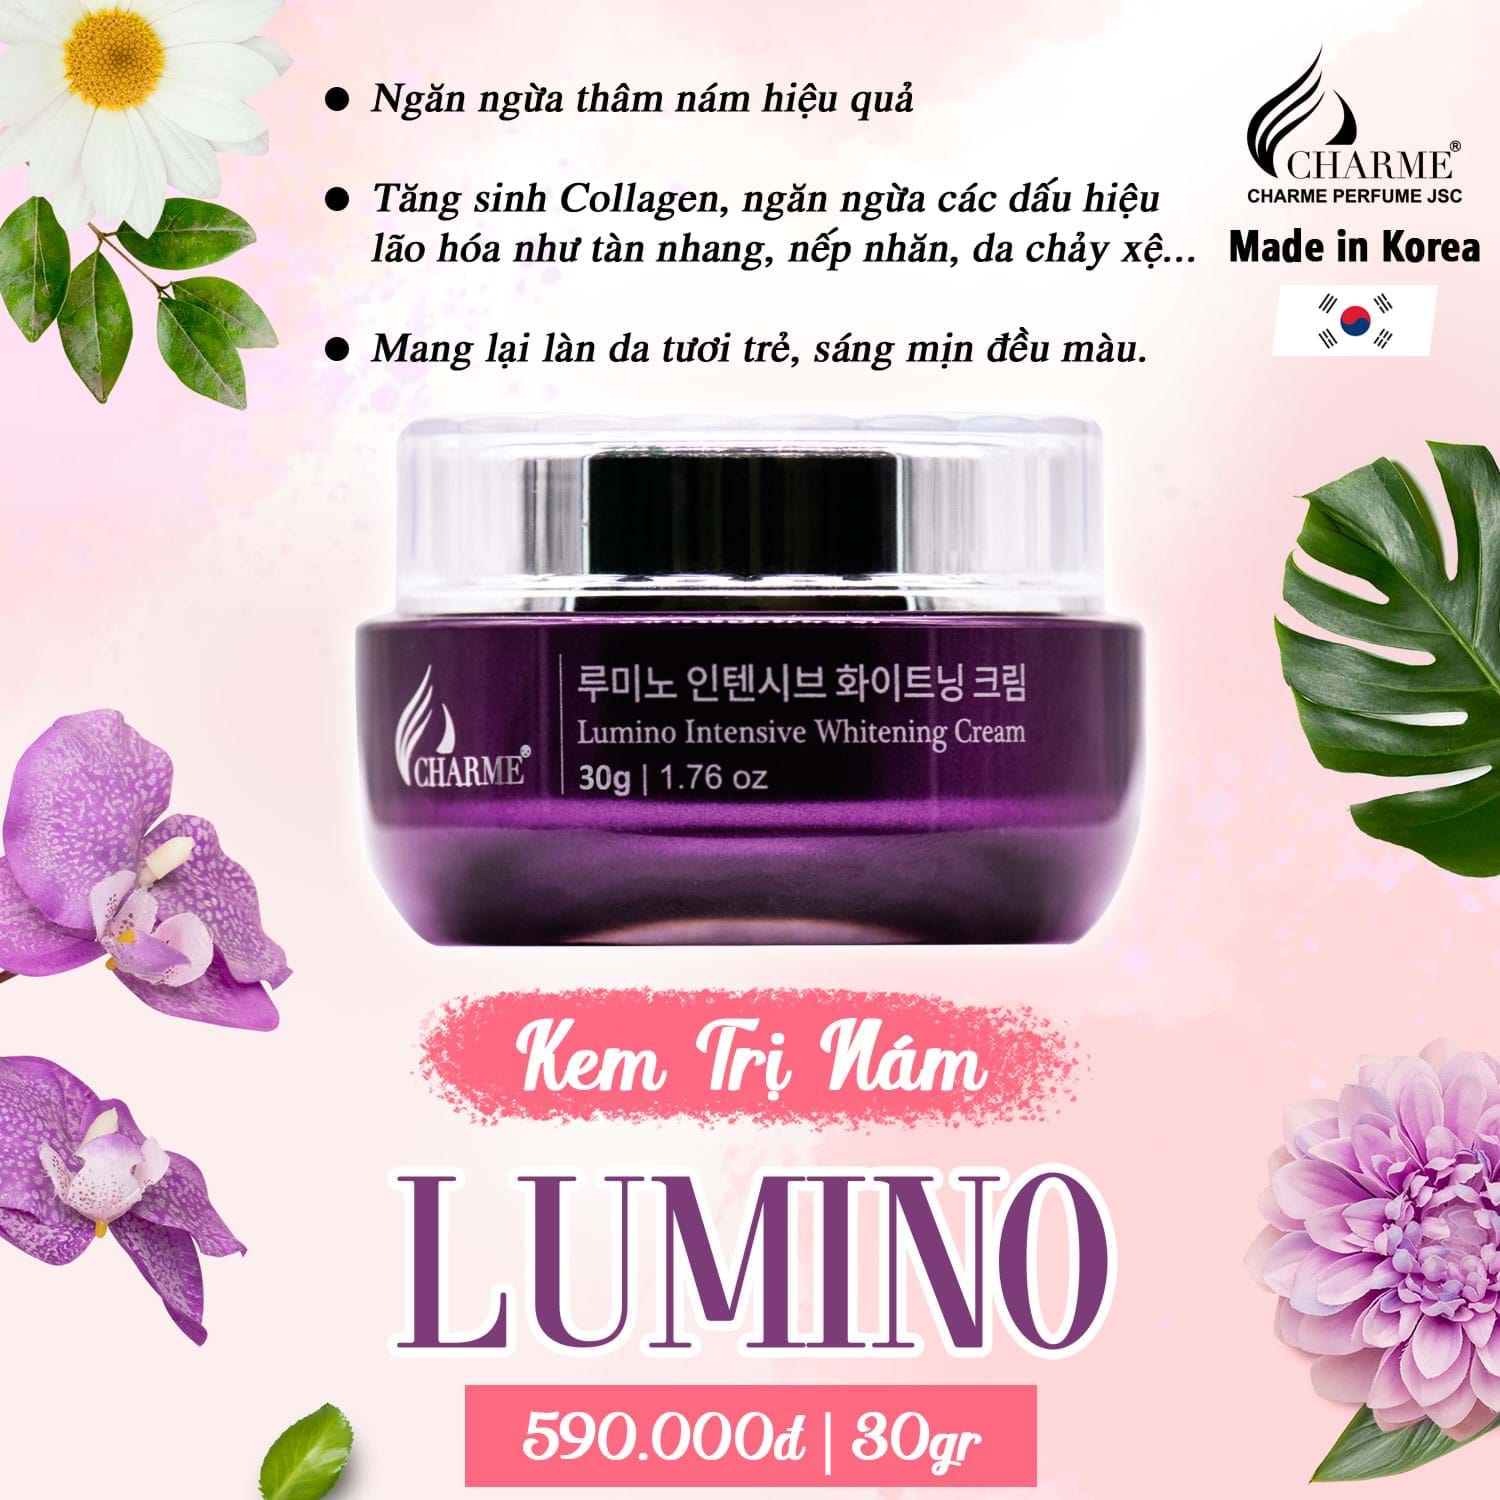 Kem Nám Hàn Quốc Charme Lumino Intensive Whitening Cream